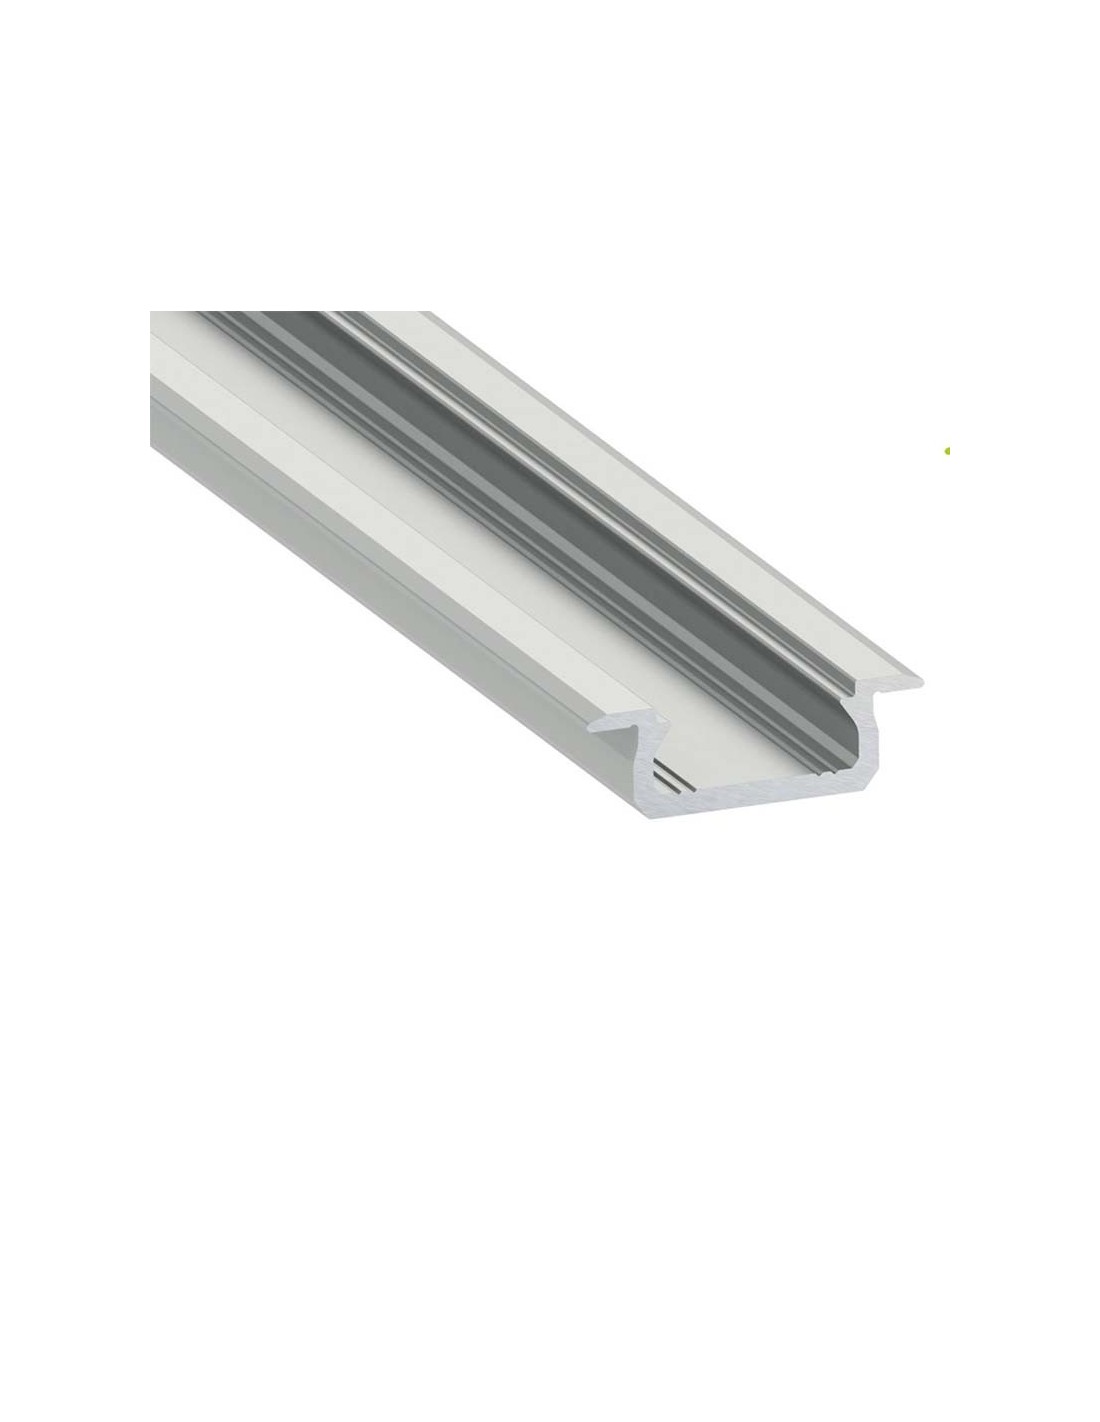 Tira de LEDs en perfil de aluminio empotrado en armario.  Iluminación led  empotrada, Perfiles de aluminio, Cosas de casa